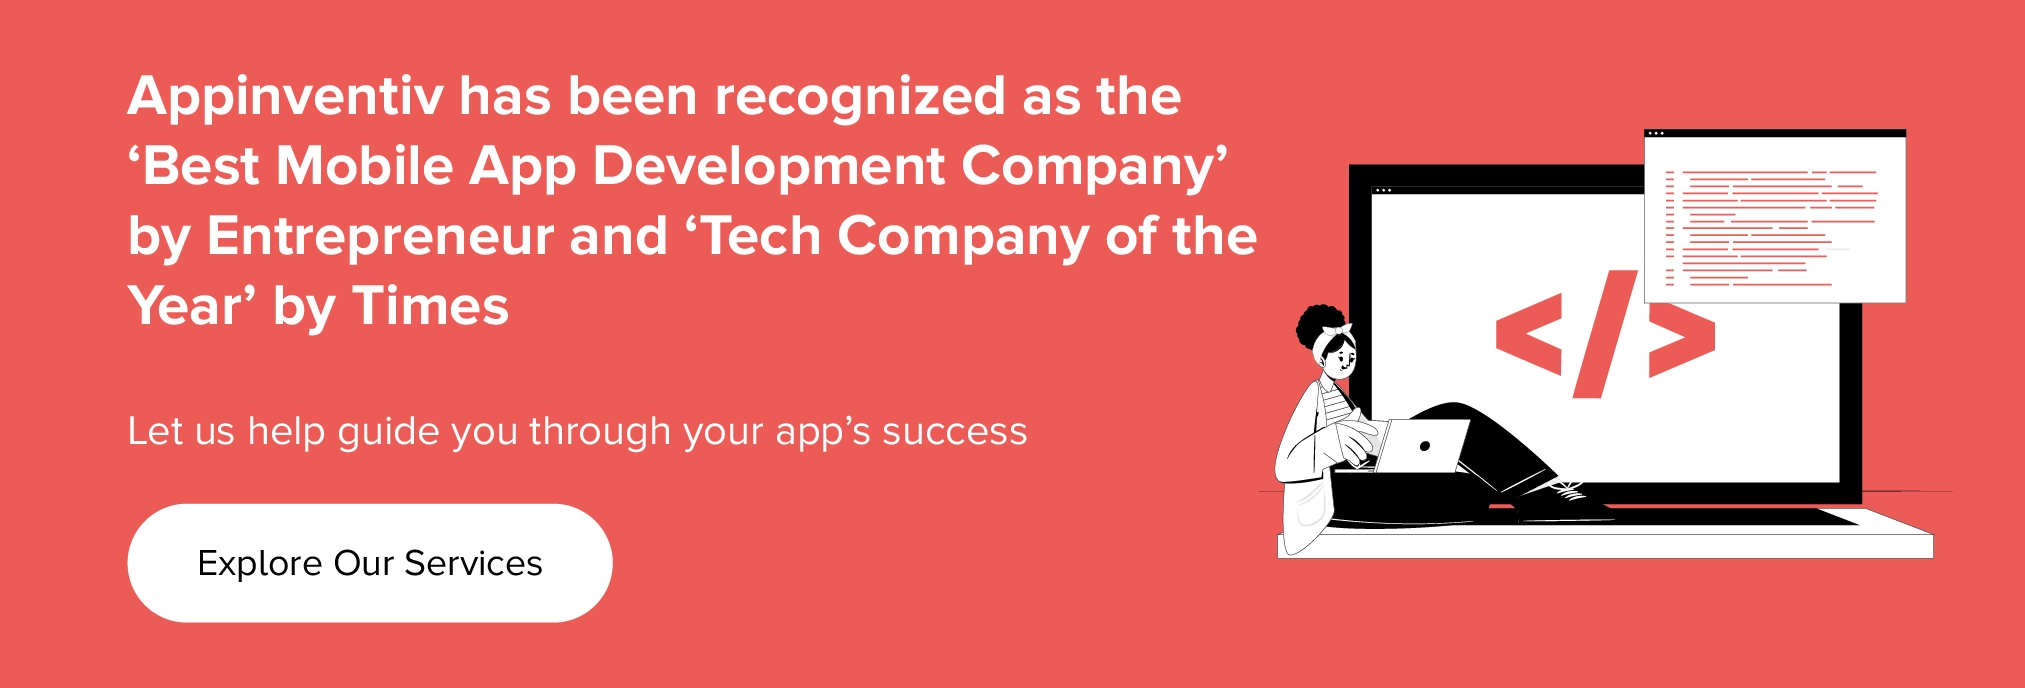 Appinventiv wurde von Entrepreneur als „Best Mobile App Development Company“ und von Times als „Tech Company of the Year“ ausgezeichnet